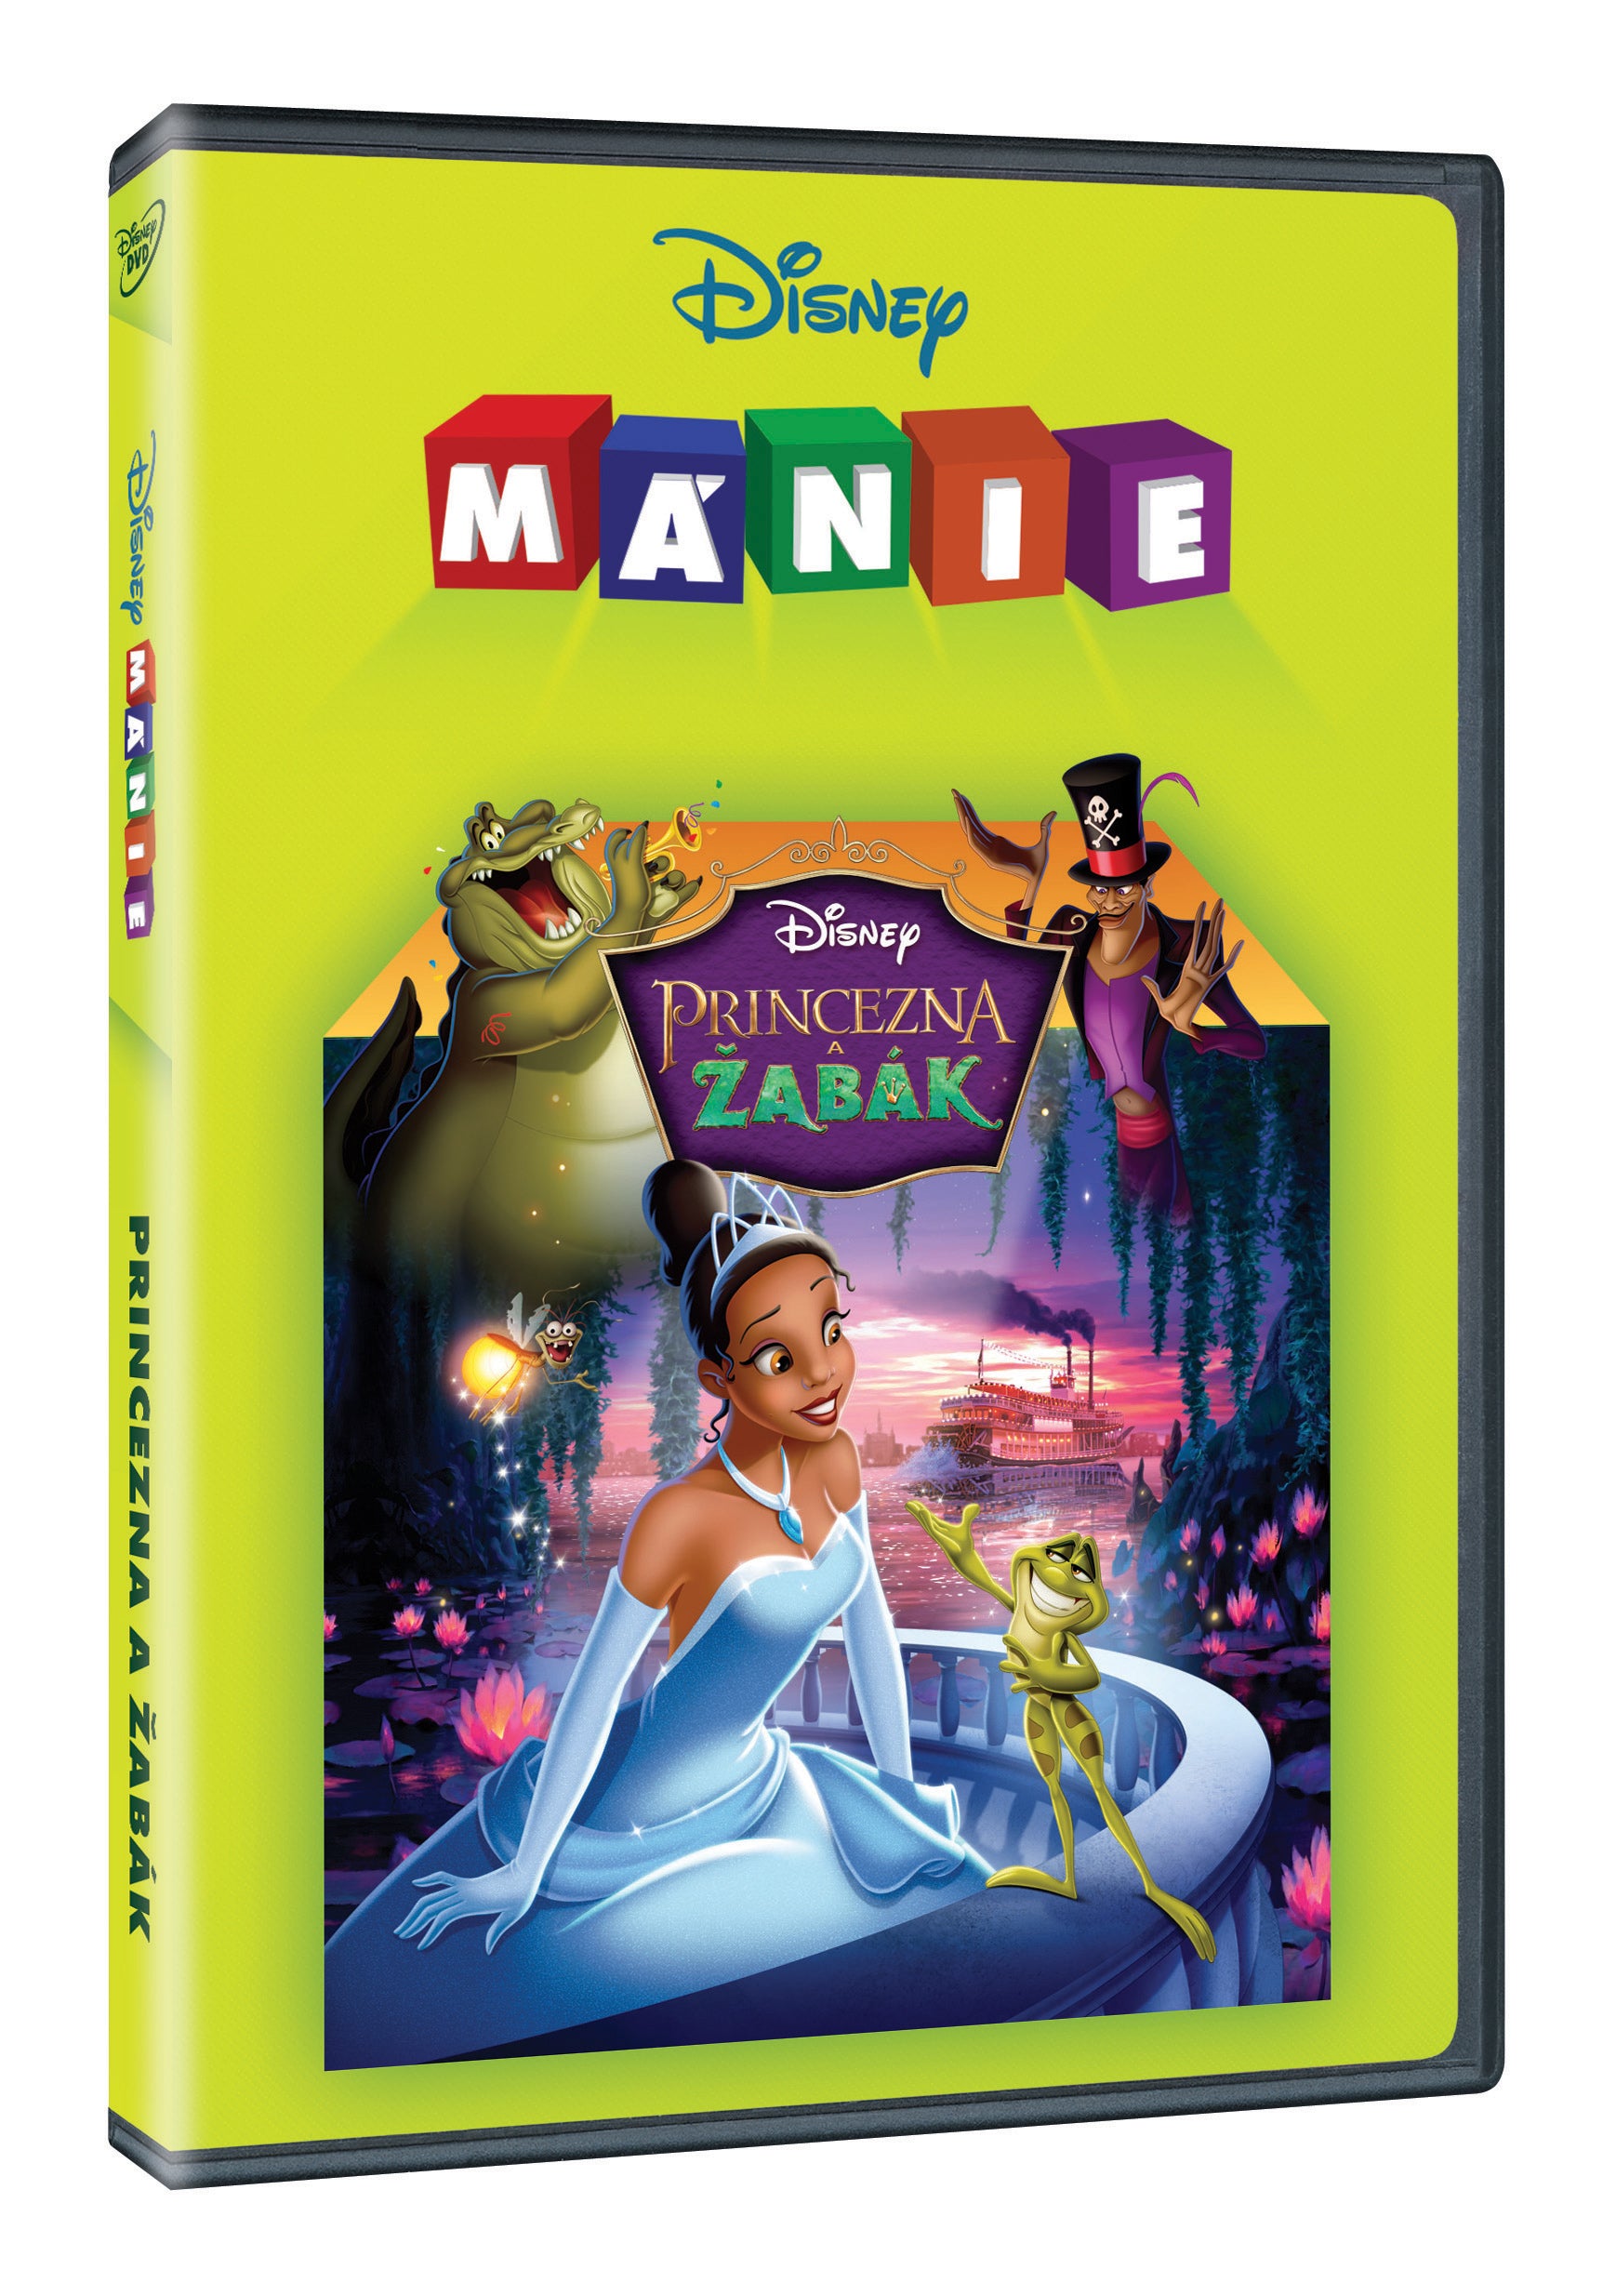 Princezna a zabak – Disney-Manie (Die Prinzessin und der Frosch)